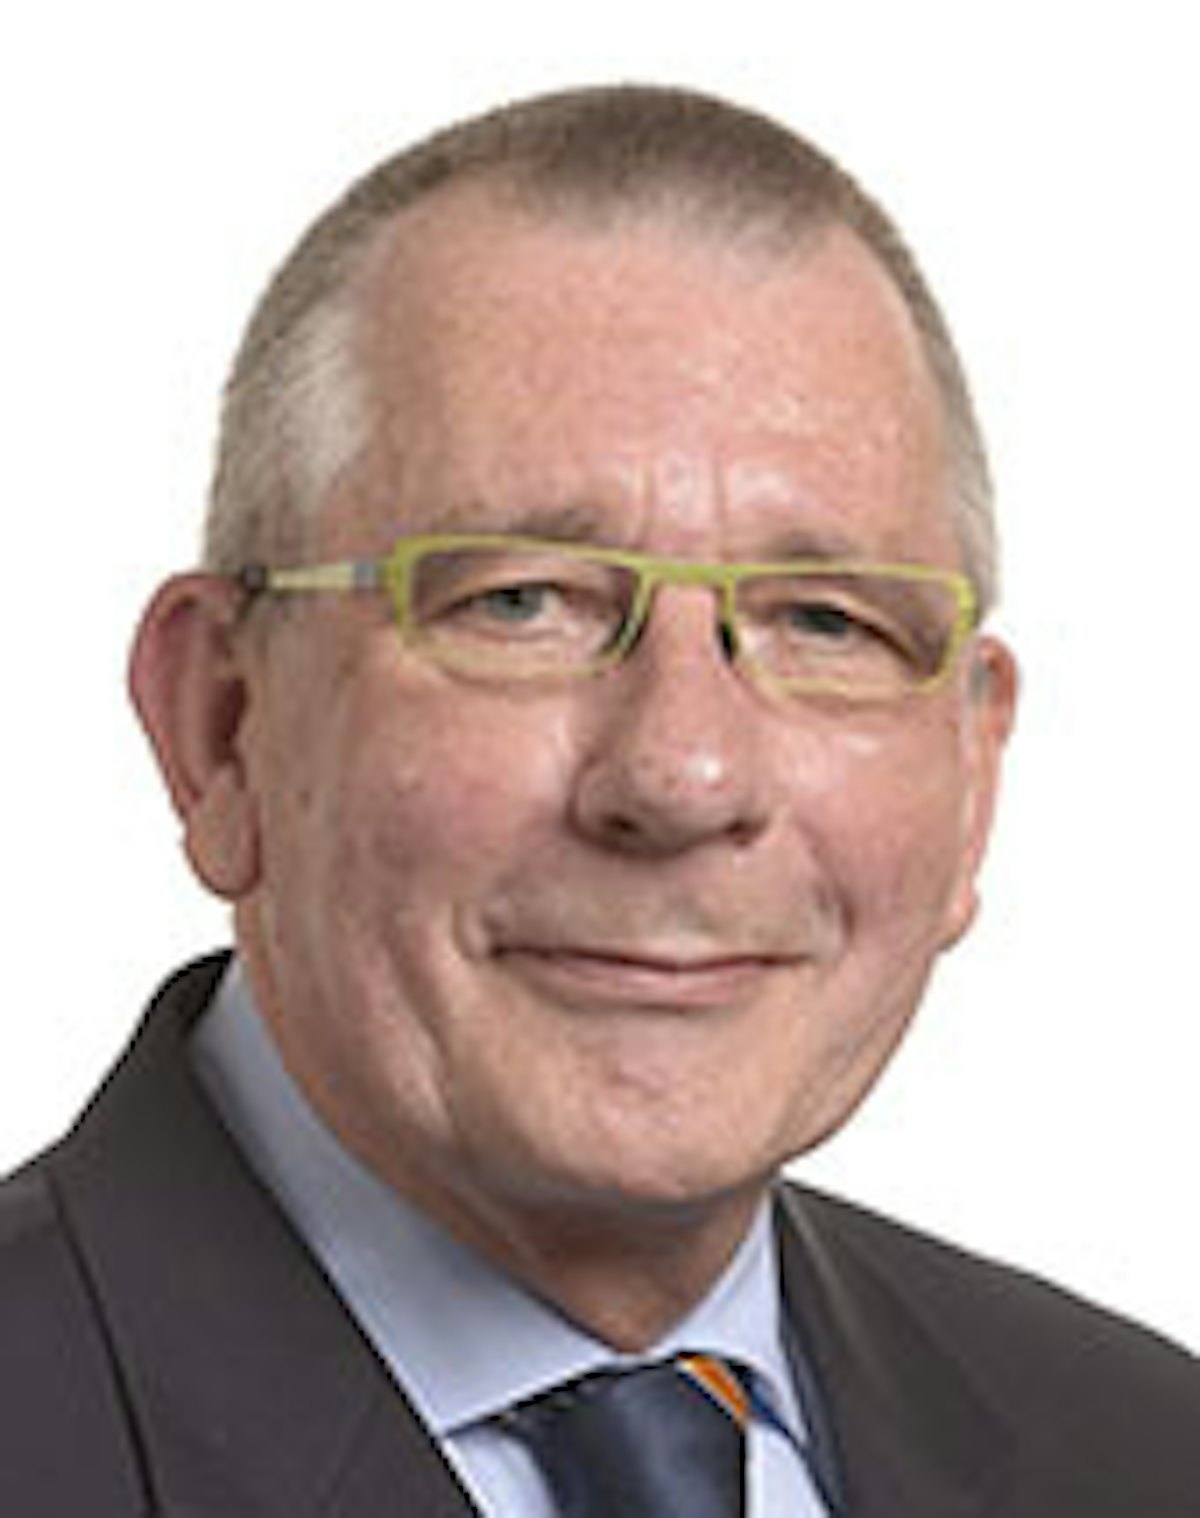 Dennis de Jong, eurodiputado y copresidente del Intergrupo del Parlamento Europeo sobre Libertad de Religión o Creencia y Tolerancia Religiosa (foto del Parlamento Europeo)